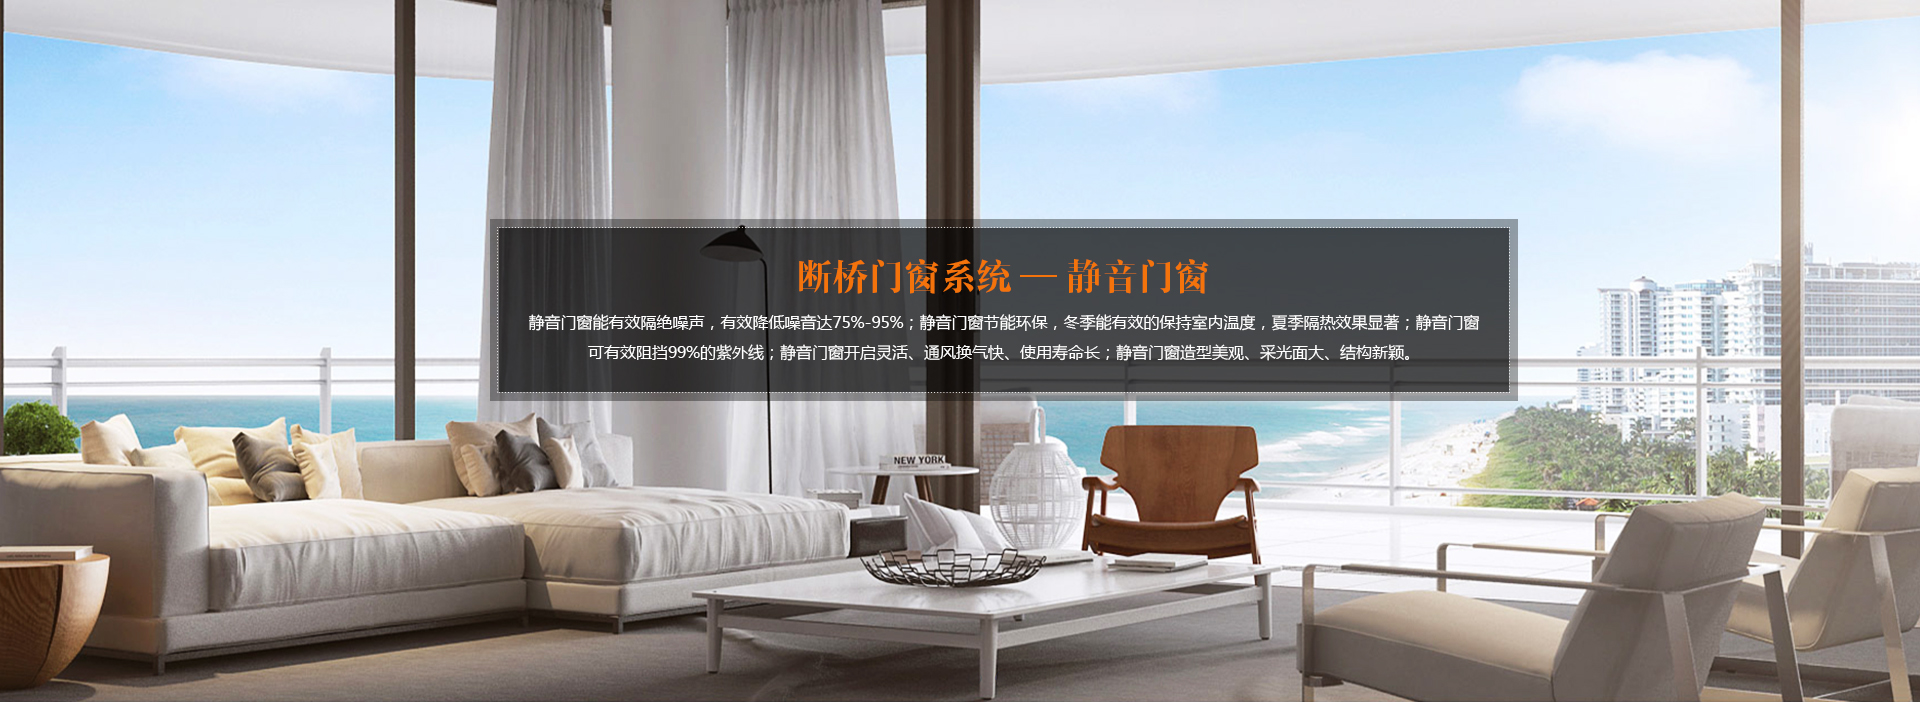 关于当前产品12博备用官网·(中国)官方网站的成功案例等相关图片